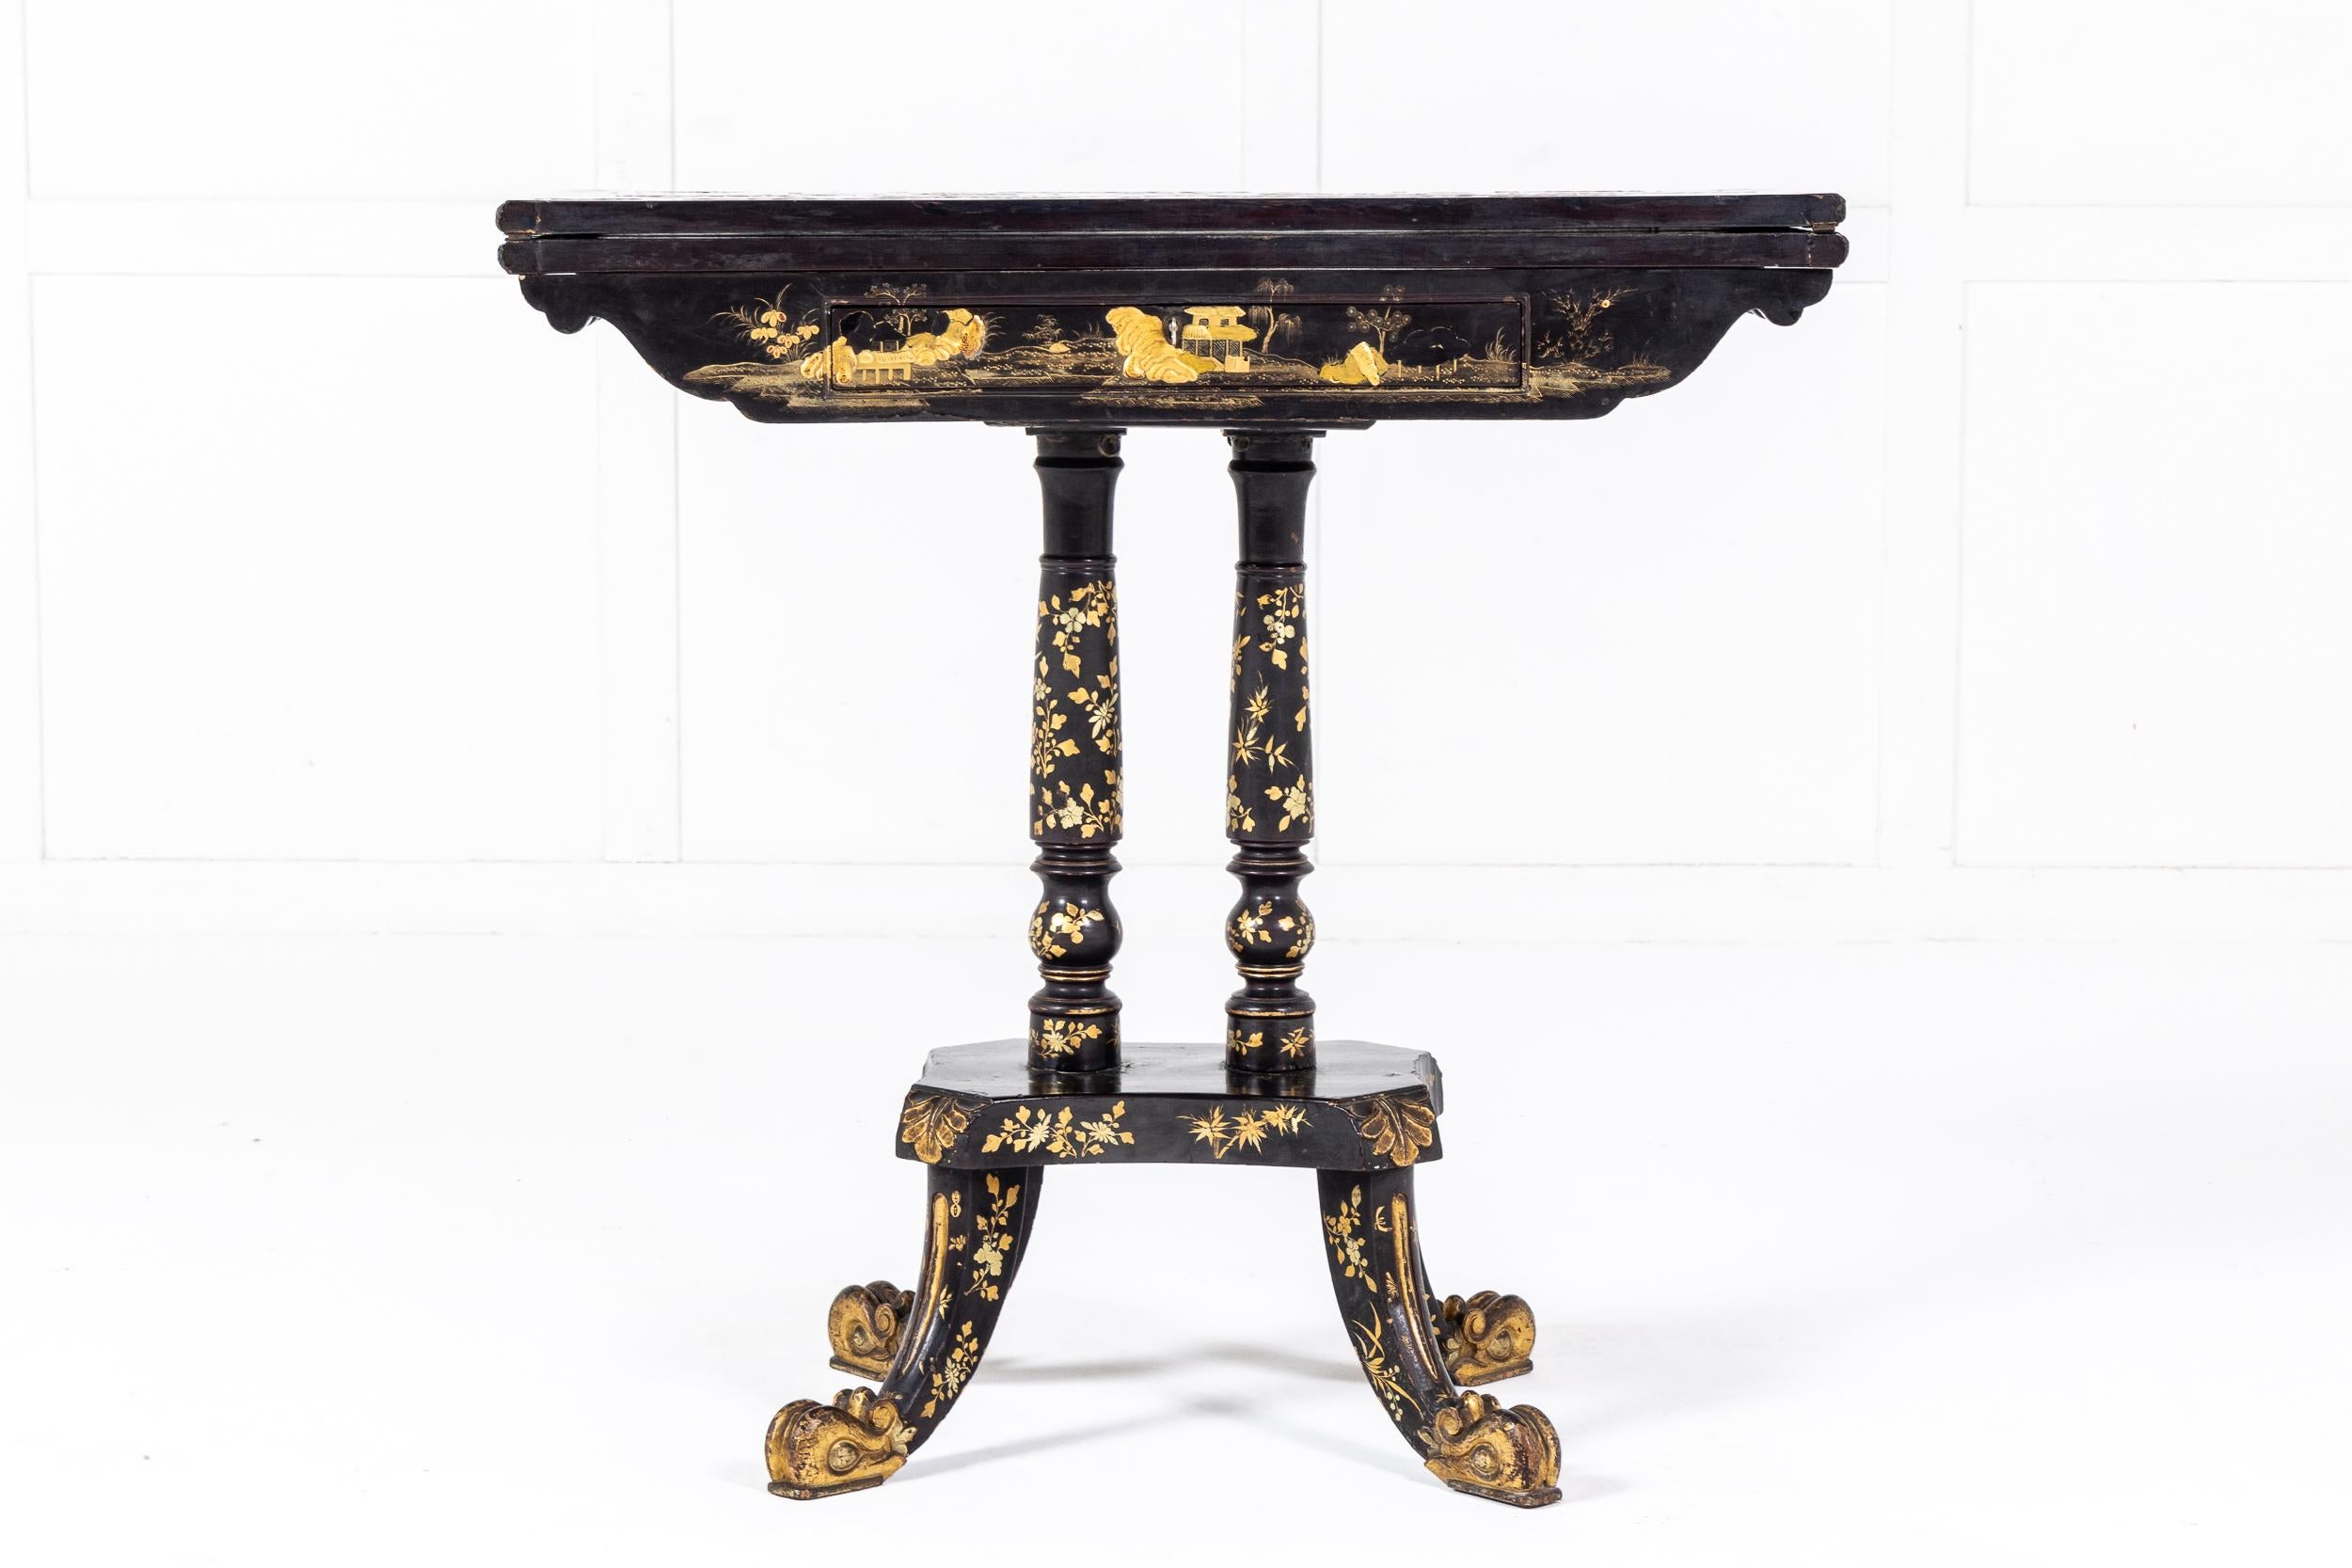 Ein schöner und dekorativer chinesischer Export-Lackspieltisch, um 1825. Wahrscheinlich auf der Grundlage eines englischen Regency-Modells und für den britischen Markt hergestellt.

Dieser schöne Tisch hat die übliche Klappplatte, wird aber von zwei